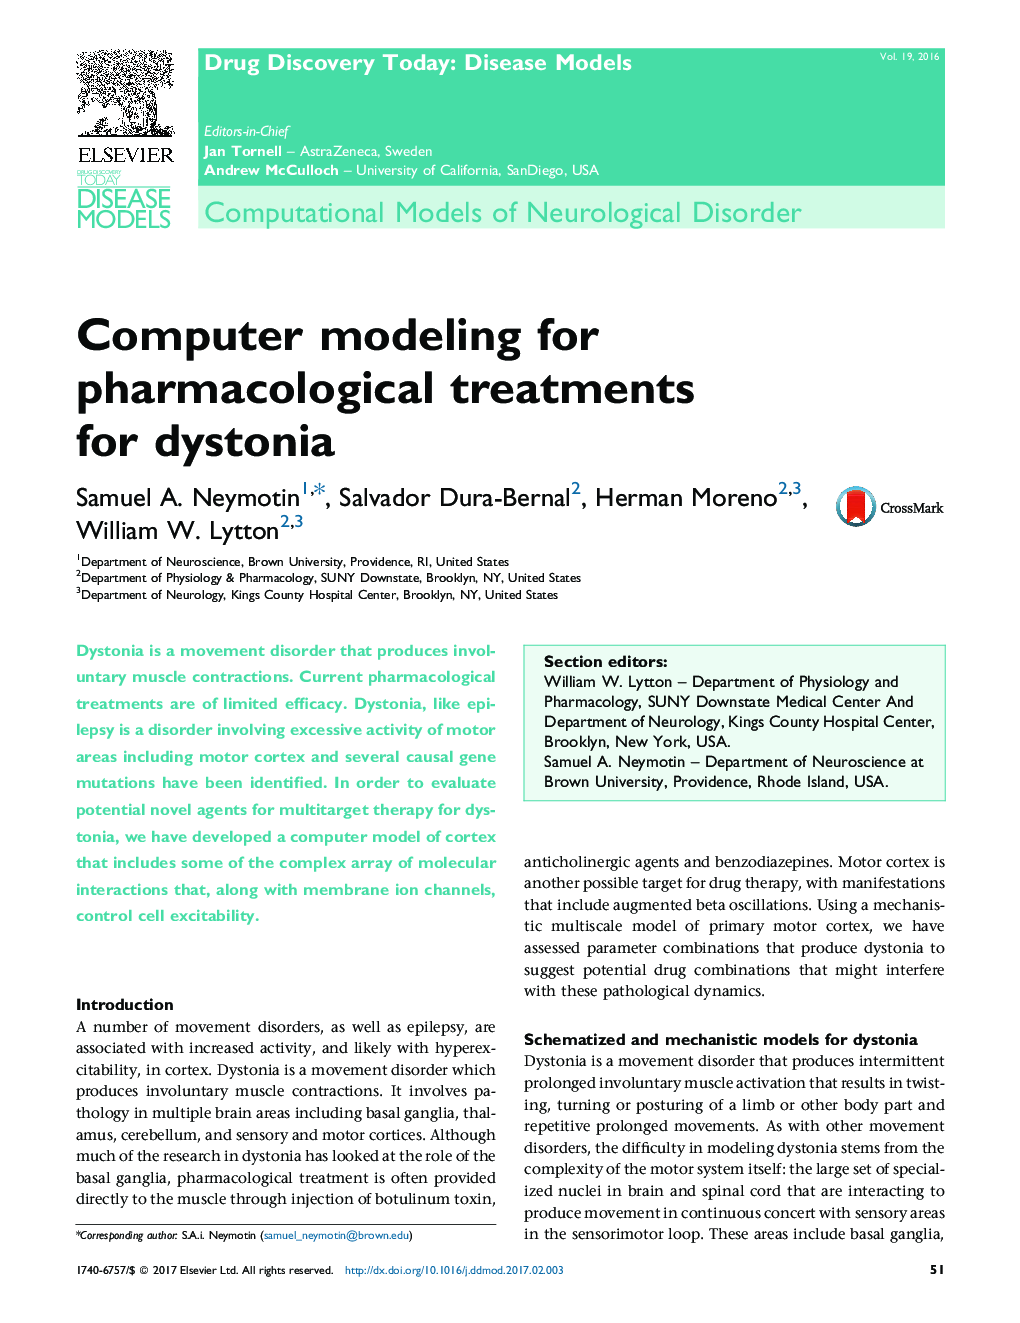 مدل های محاسباتی اختلال نورولوژیک مدل سازی کامپیوتری برای درمان های دارویی برای دیستونی 